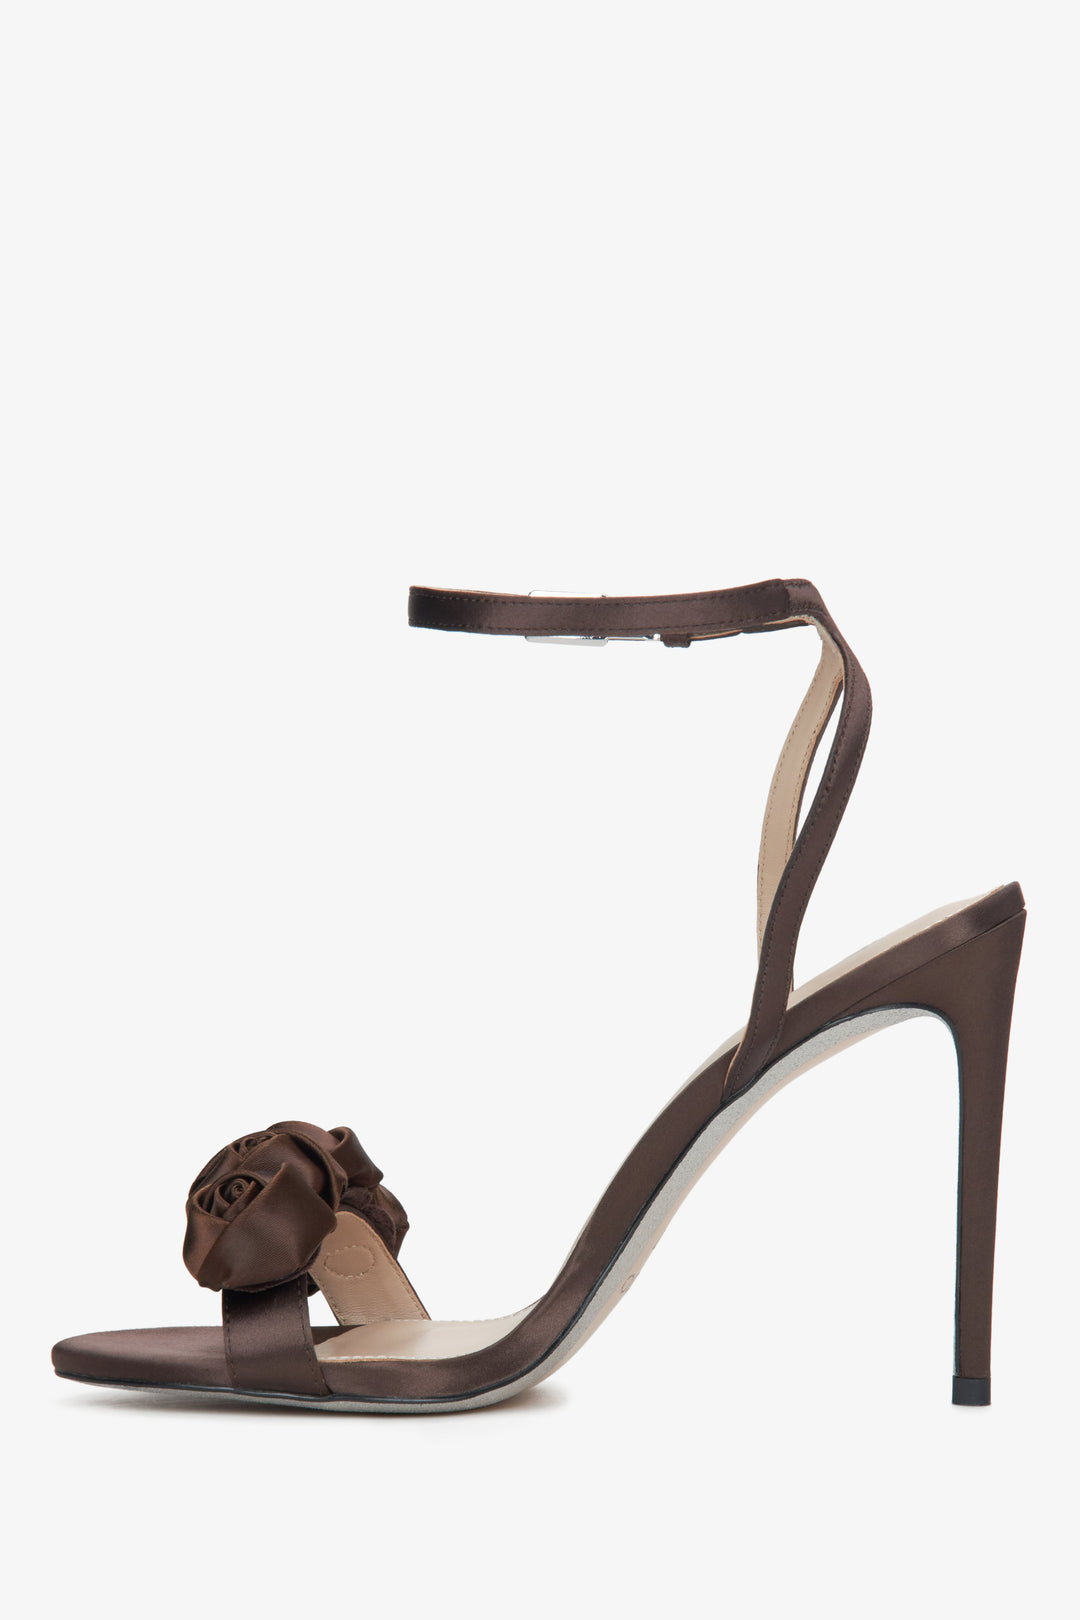 Sandałki damskie na wysokiej szpilce Estro w kolorze ciemnobrązowym - profil buta.